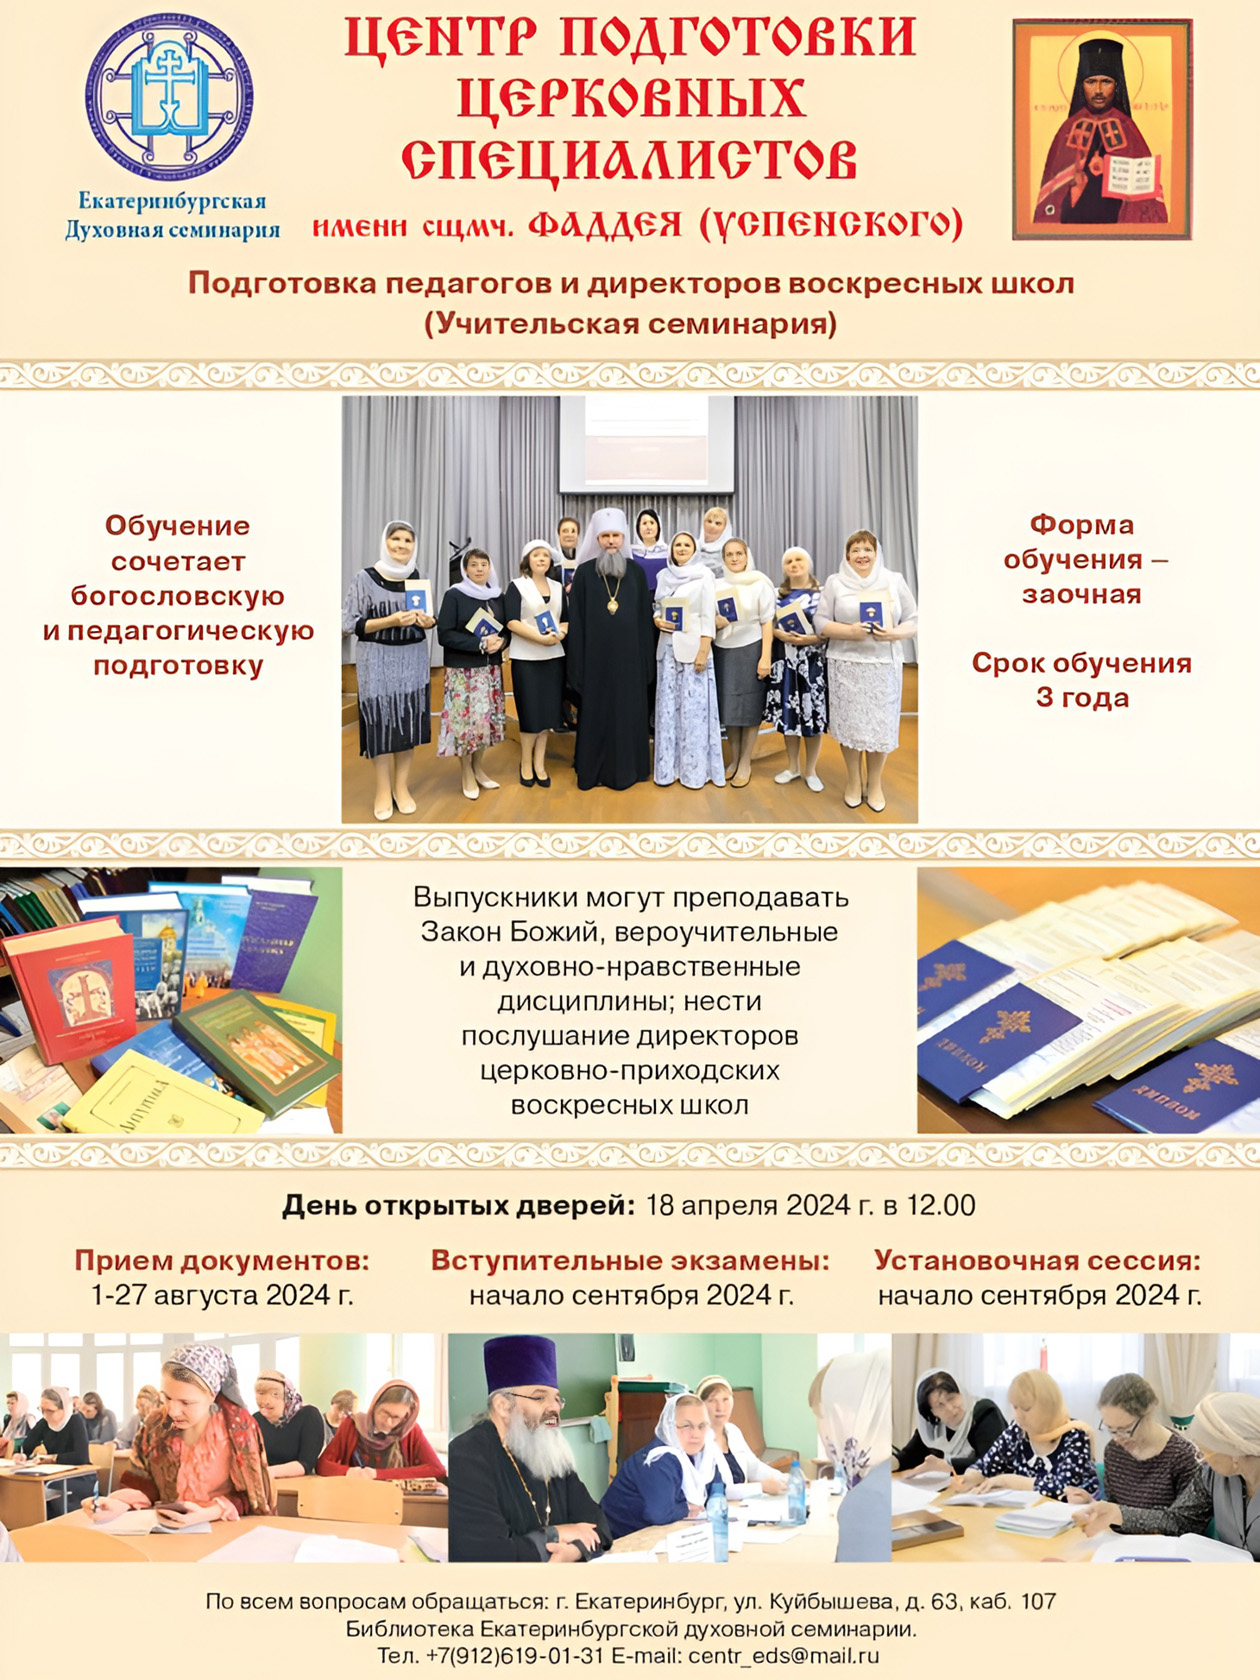 Курсы для педагогов и директоров воскресных школ есть в Екатеринбургской духовной семинарии